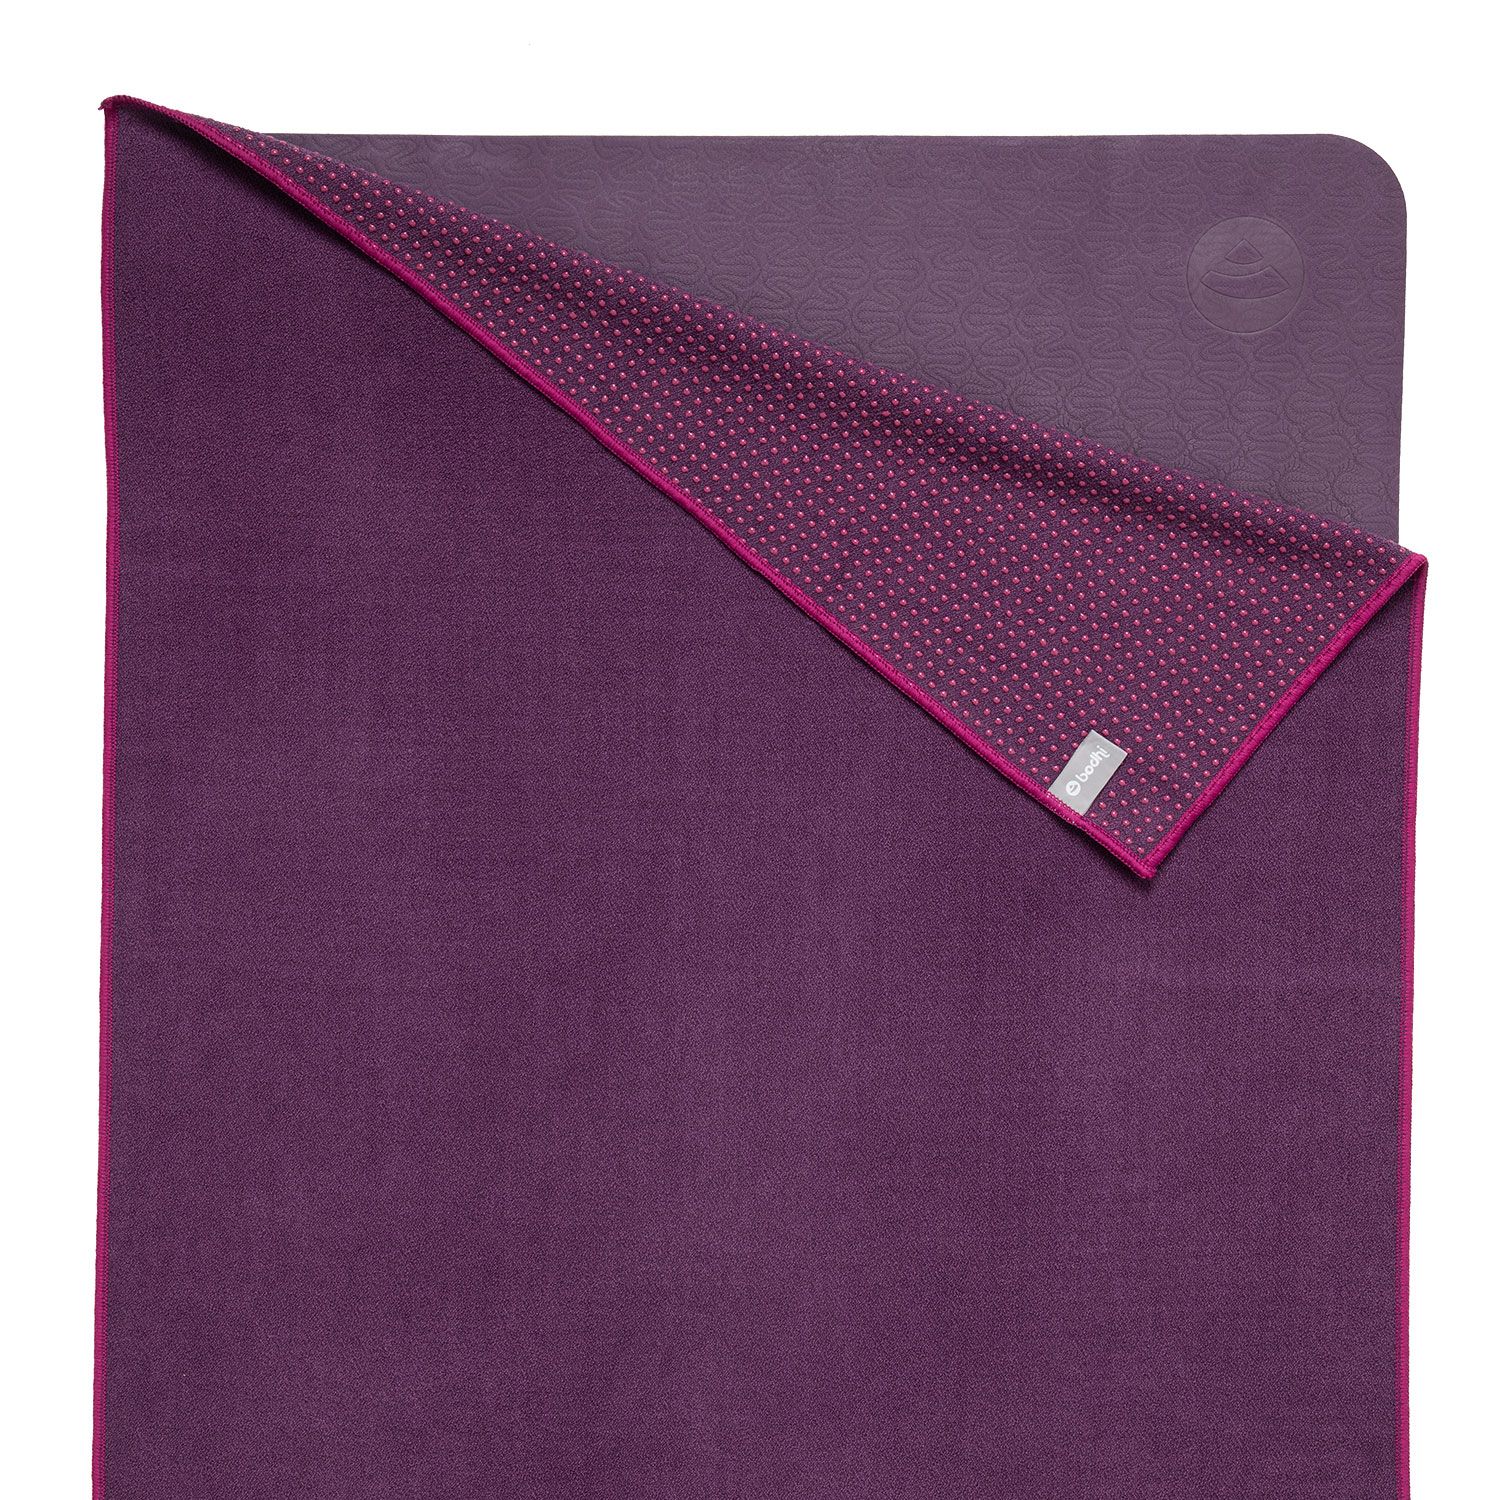 GRIP² Yoga Towel zweifarbig: aubergine mit Antirutschnoppen lila, 905-AL